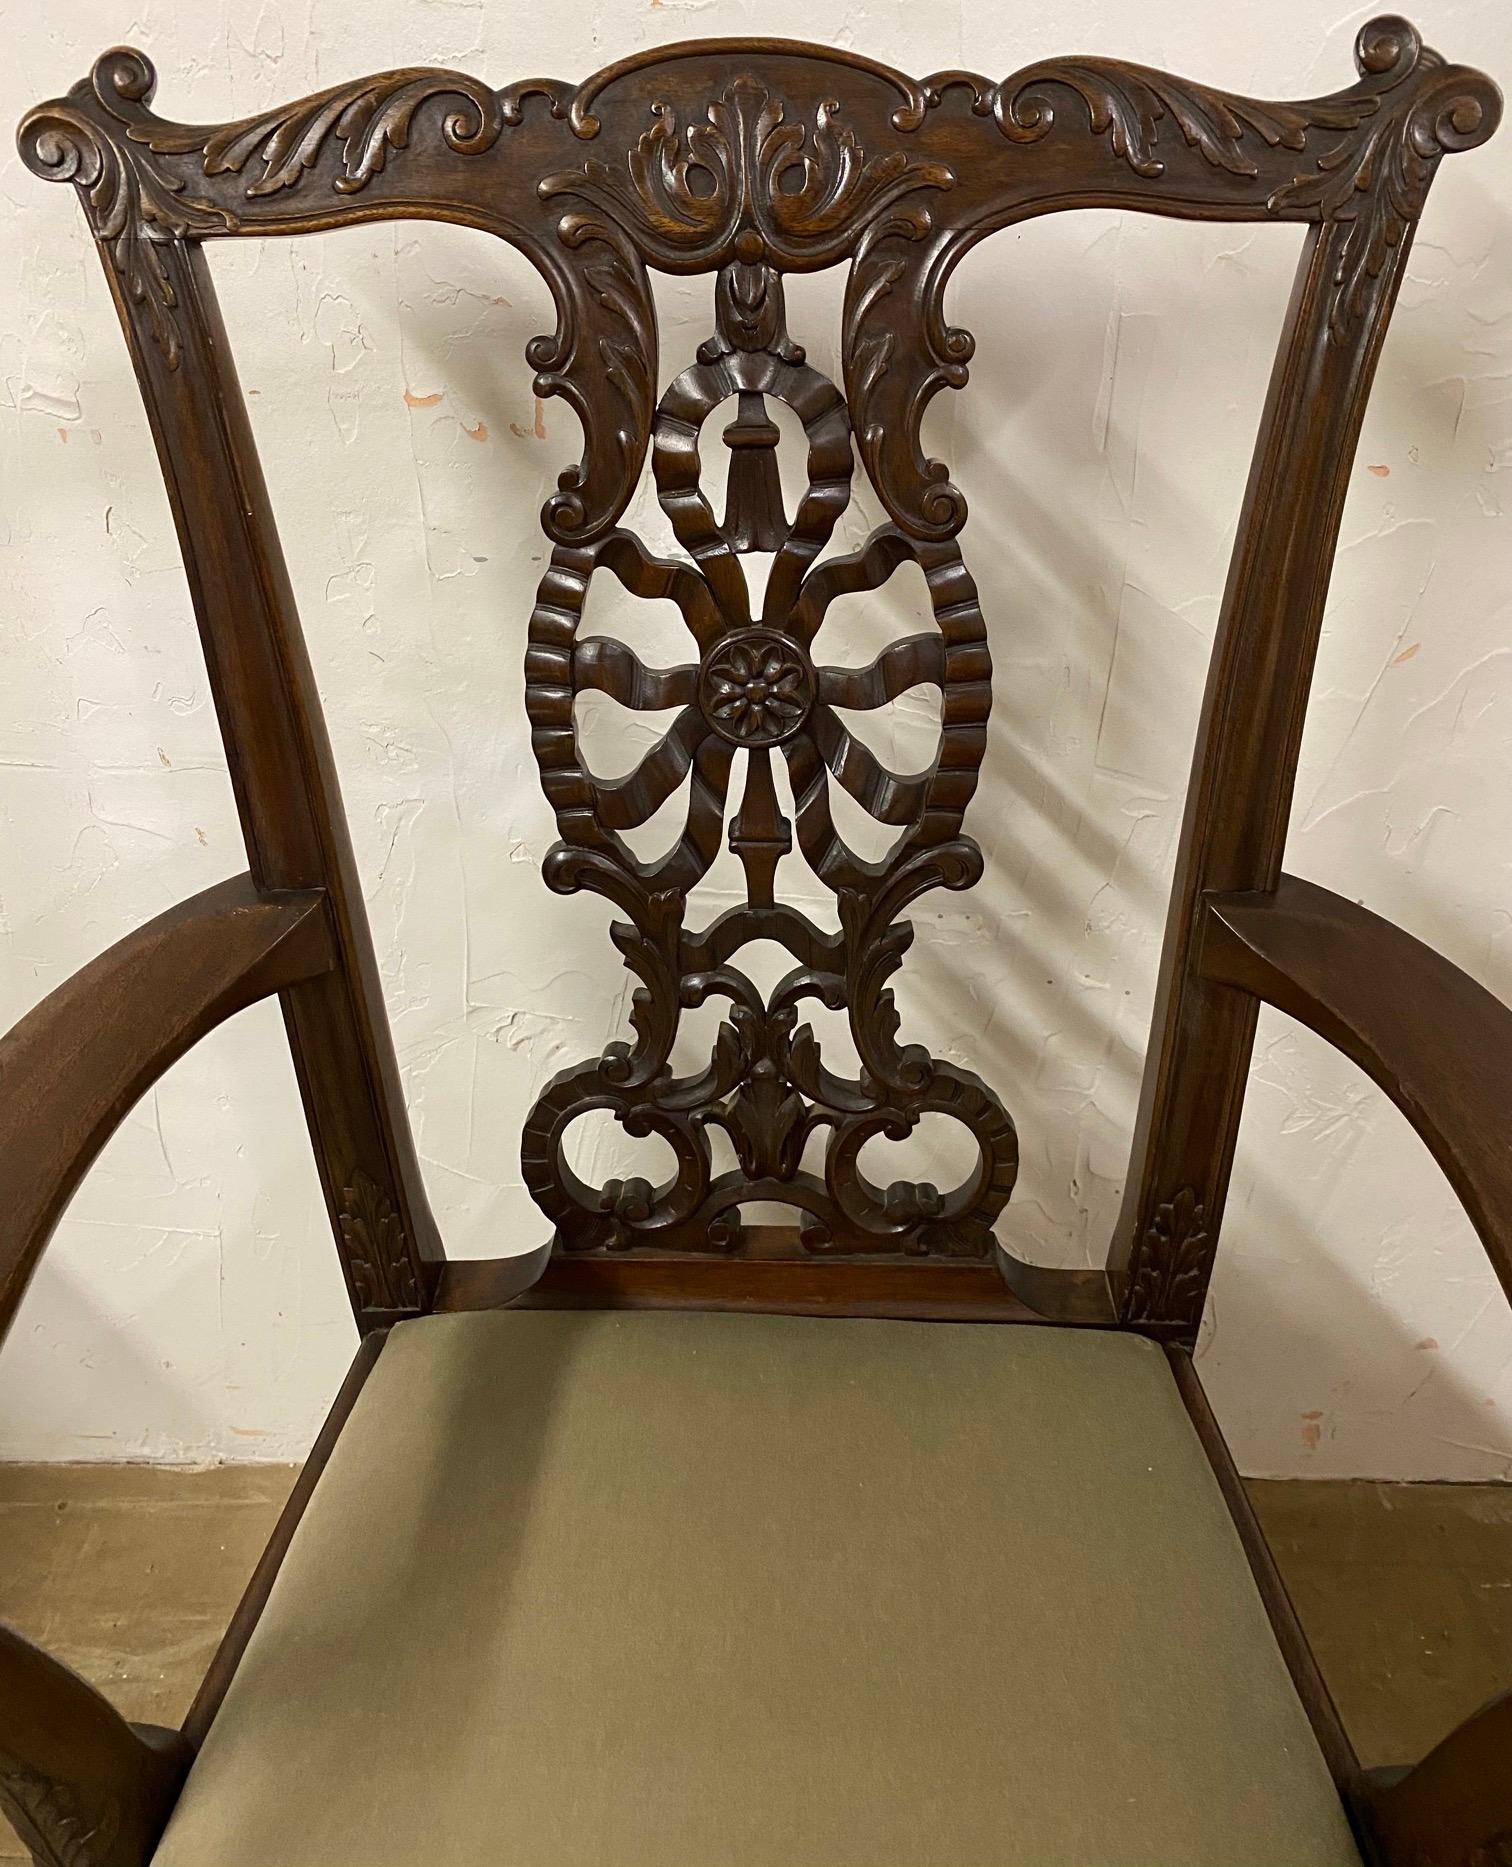 Der um 1900 im Chippendale-Stil gefertigte Mahagoni-Sessel hat handgeschnitzte Motive, darunter eine Rückenlehne, die ein Motiv aus Bändern, eine Rosette, eine Quaste und Blätter kombiniert. Die Arme enden in Adlerköpfen, die von mit